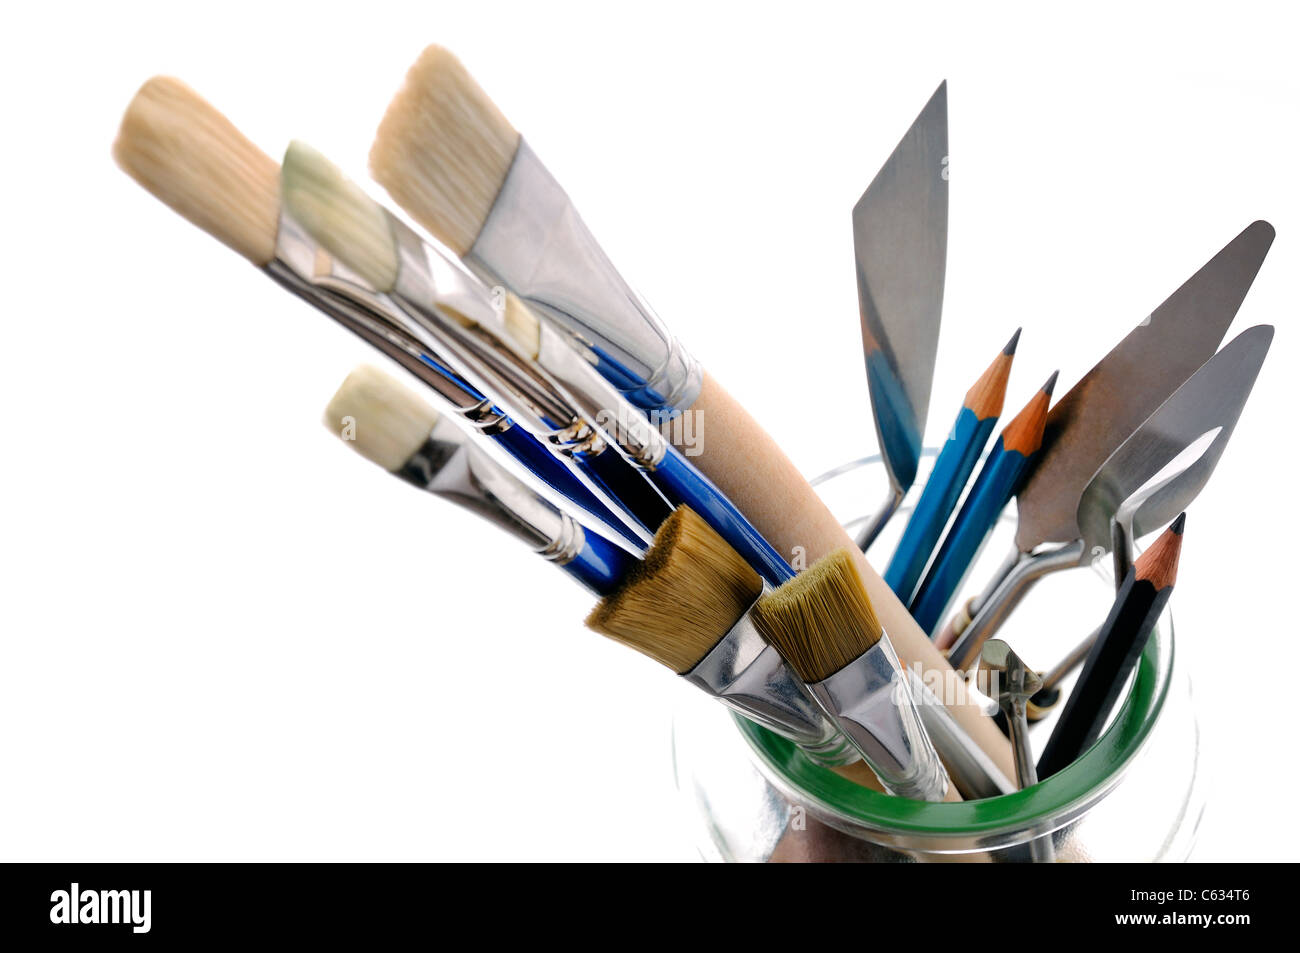 Artisti pennelli matite e pallette coltelli in un vasetto di vetro Foto Stock